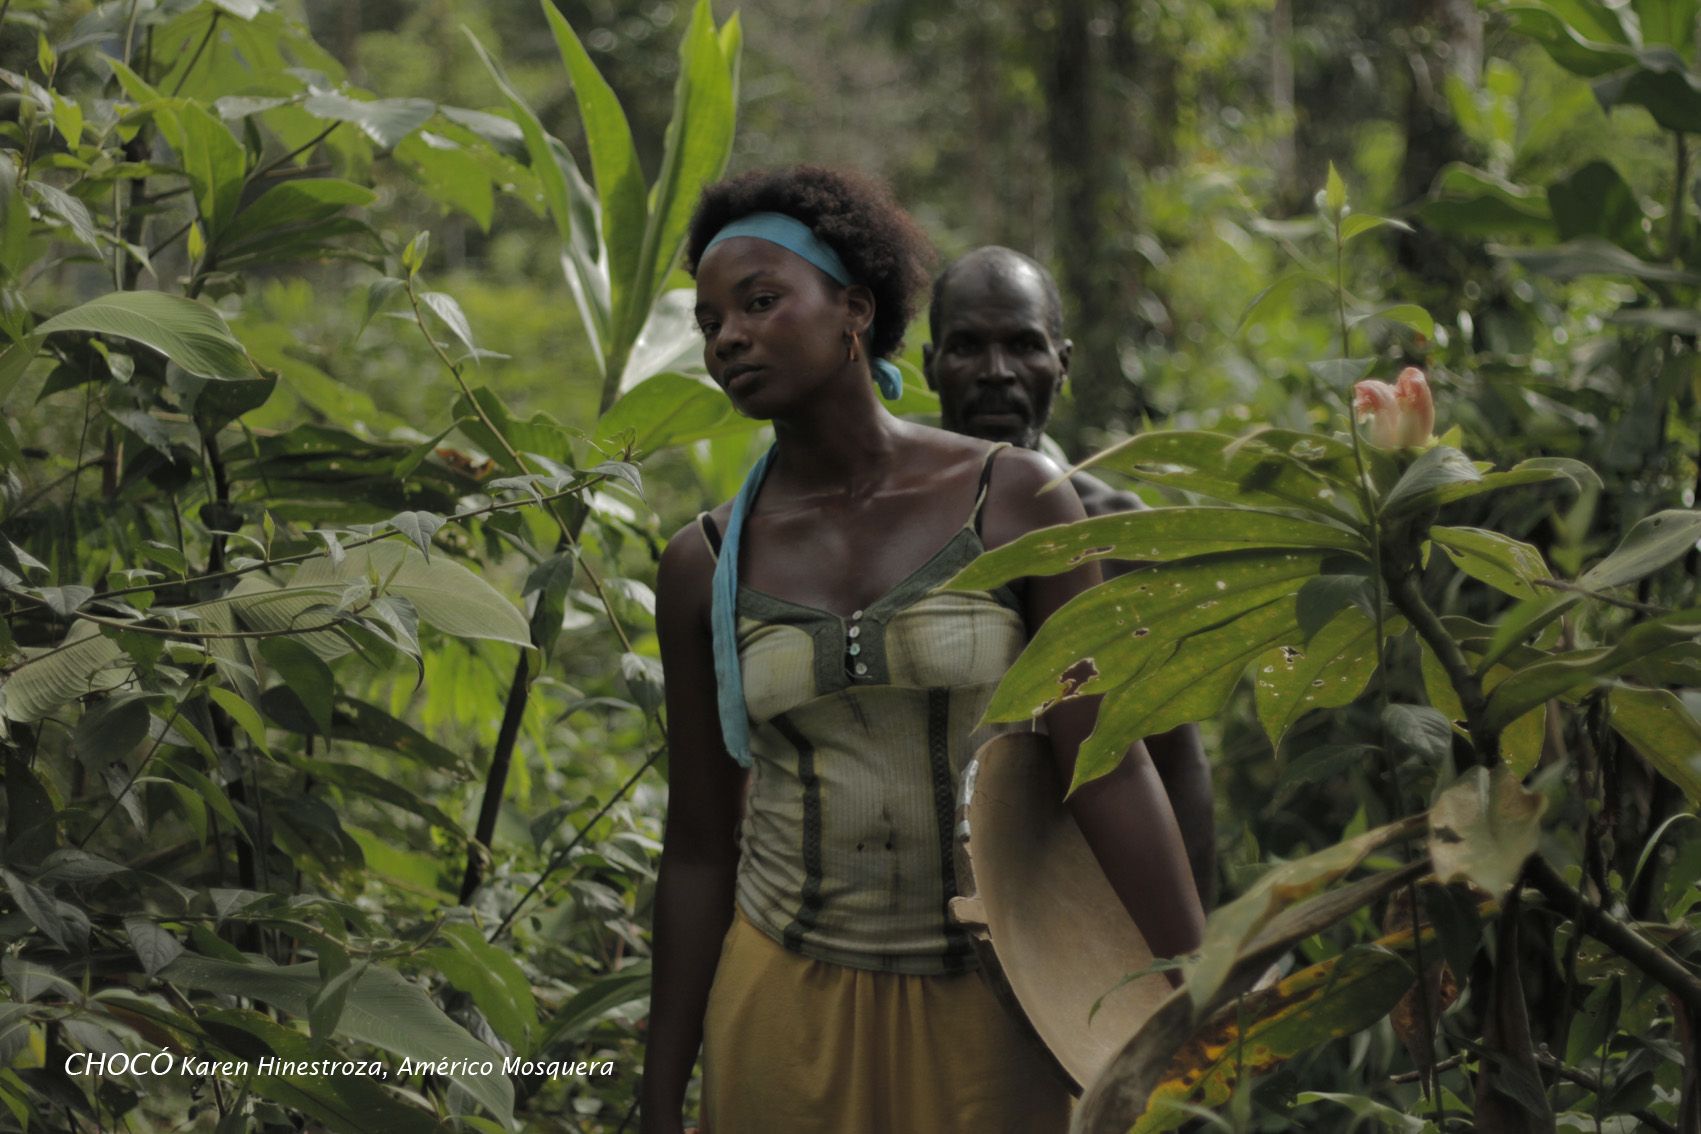 Den afro-colombianska skådespelerskan och huvudrollsinnehavaren i filmen Chocó